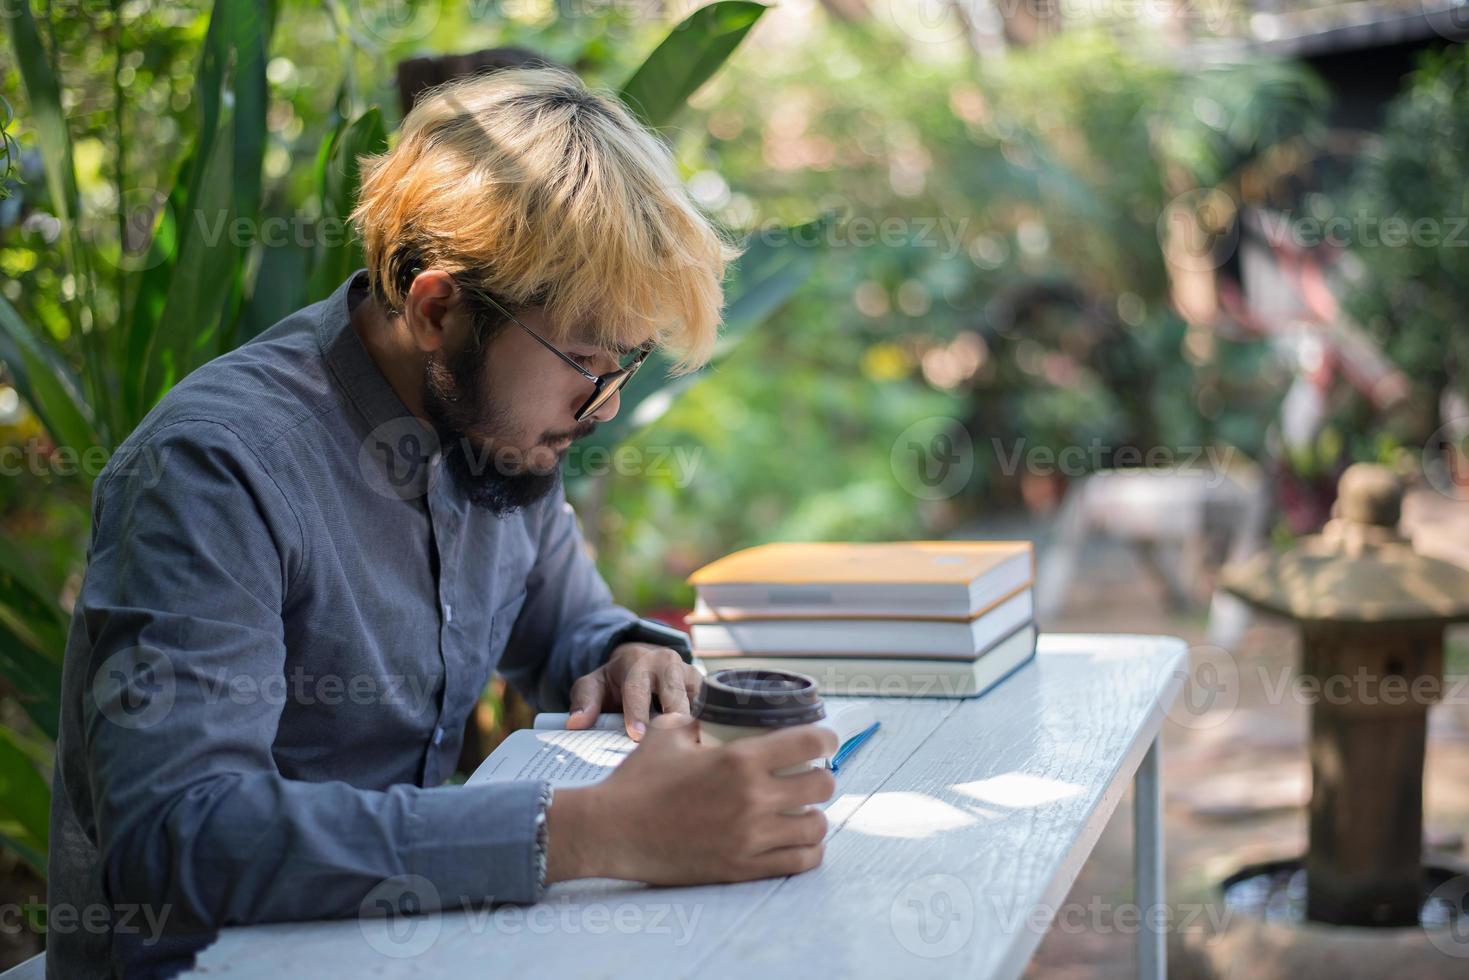 junger Hipster-Bartmann, der Kaffee trinkt, während Bücher im Hausgarten mit Natur liest foto